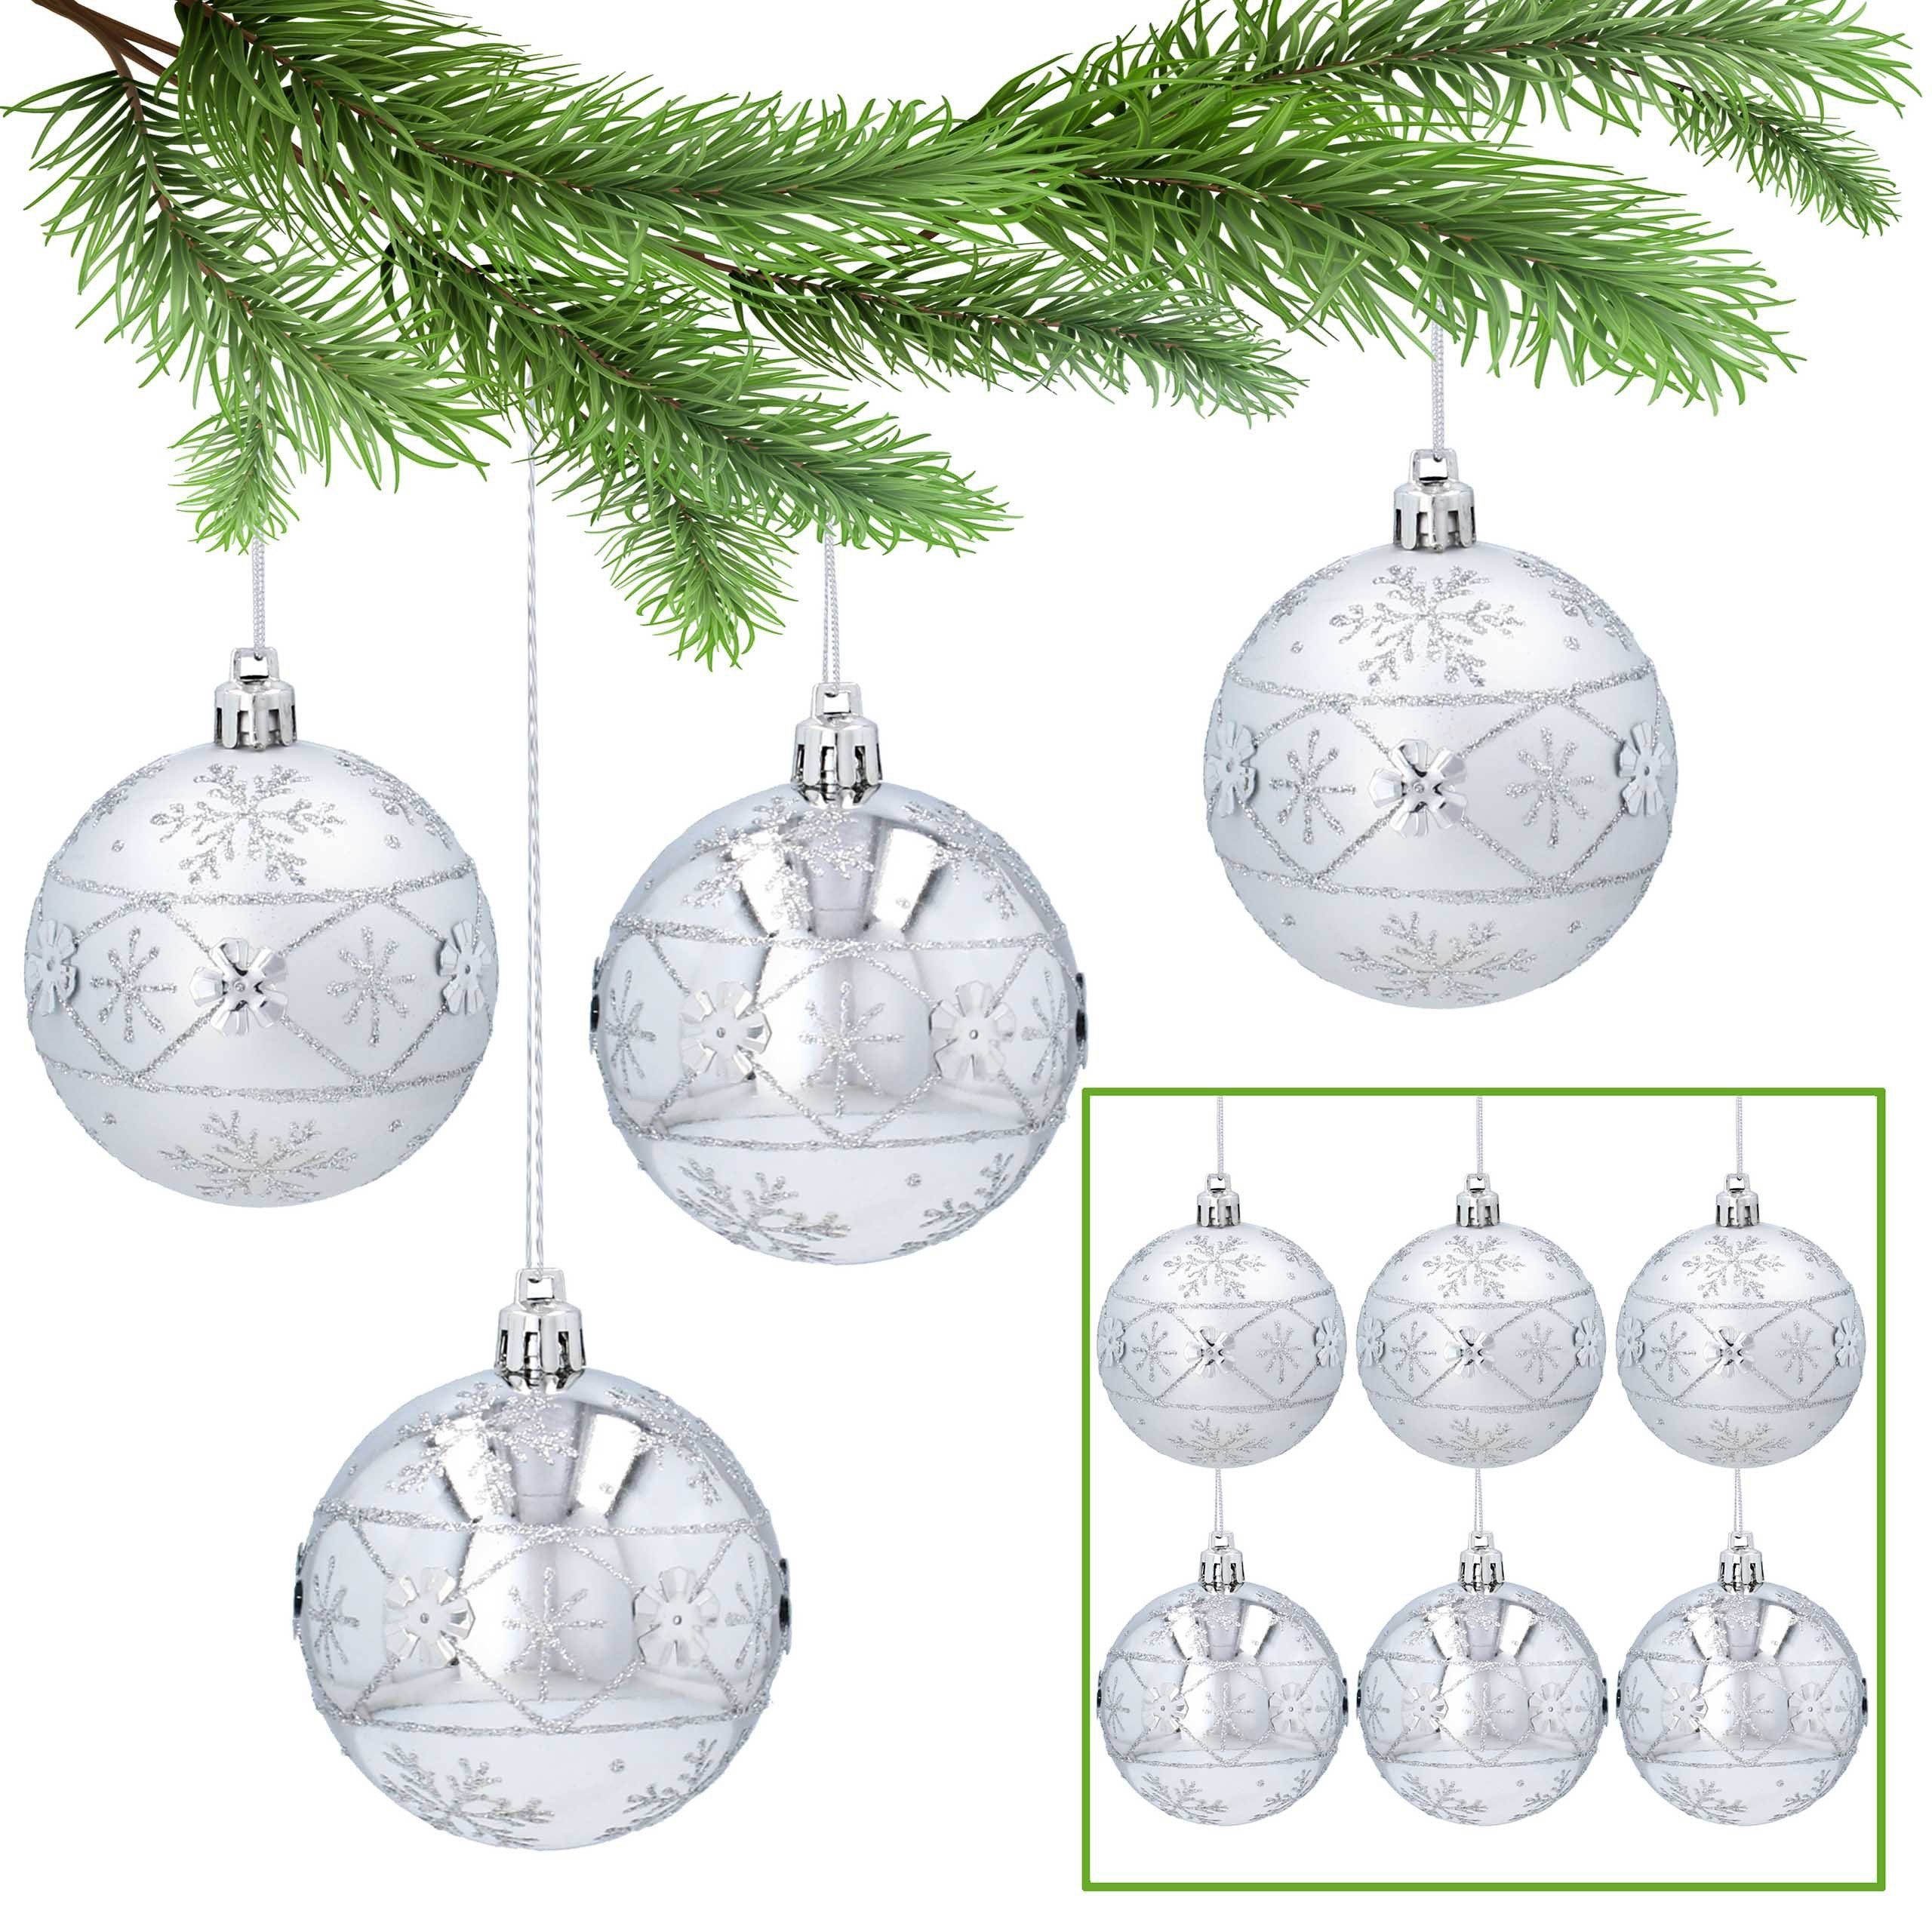 Sarcia.eu Weihnachtsbaumkugel Silberne kugeln mit Glitzer aus Kunststoff 7cm, 6Stück 1Pack